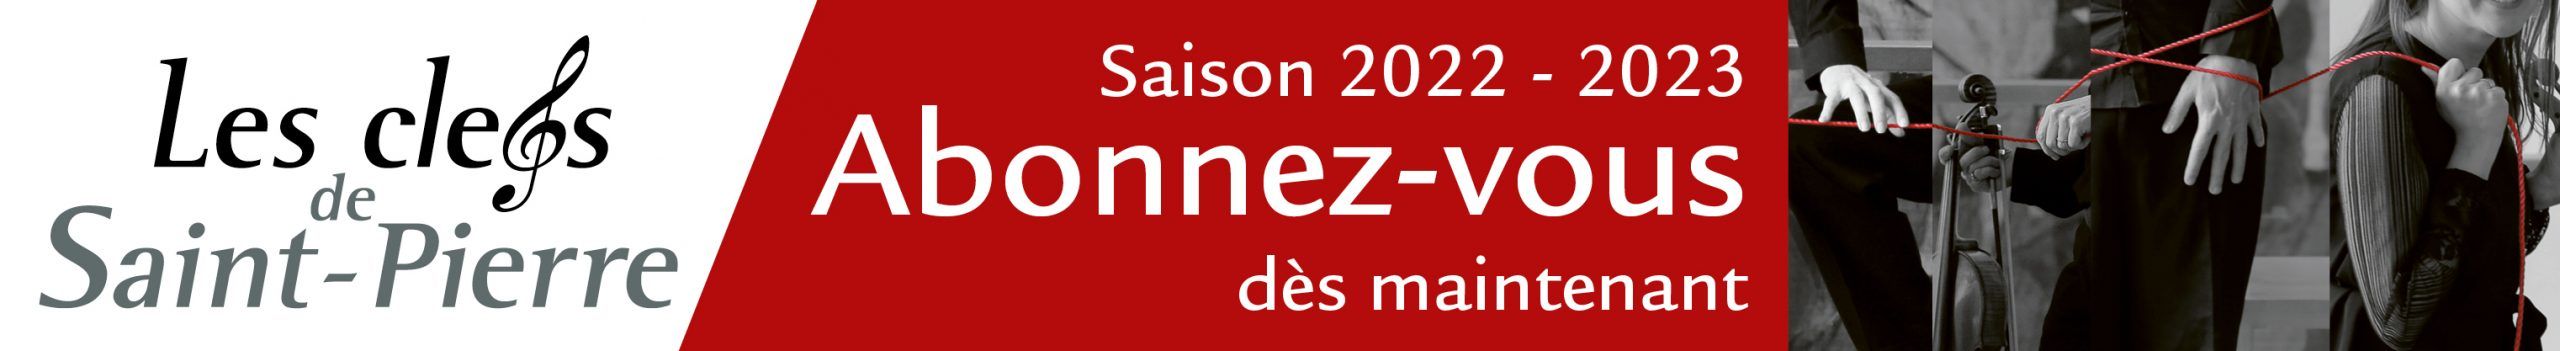 Les Clefs de Saint-Pierre – Saison 2022/2023